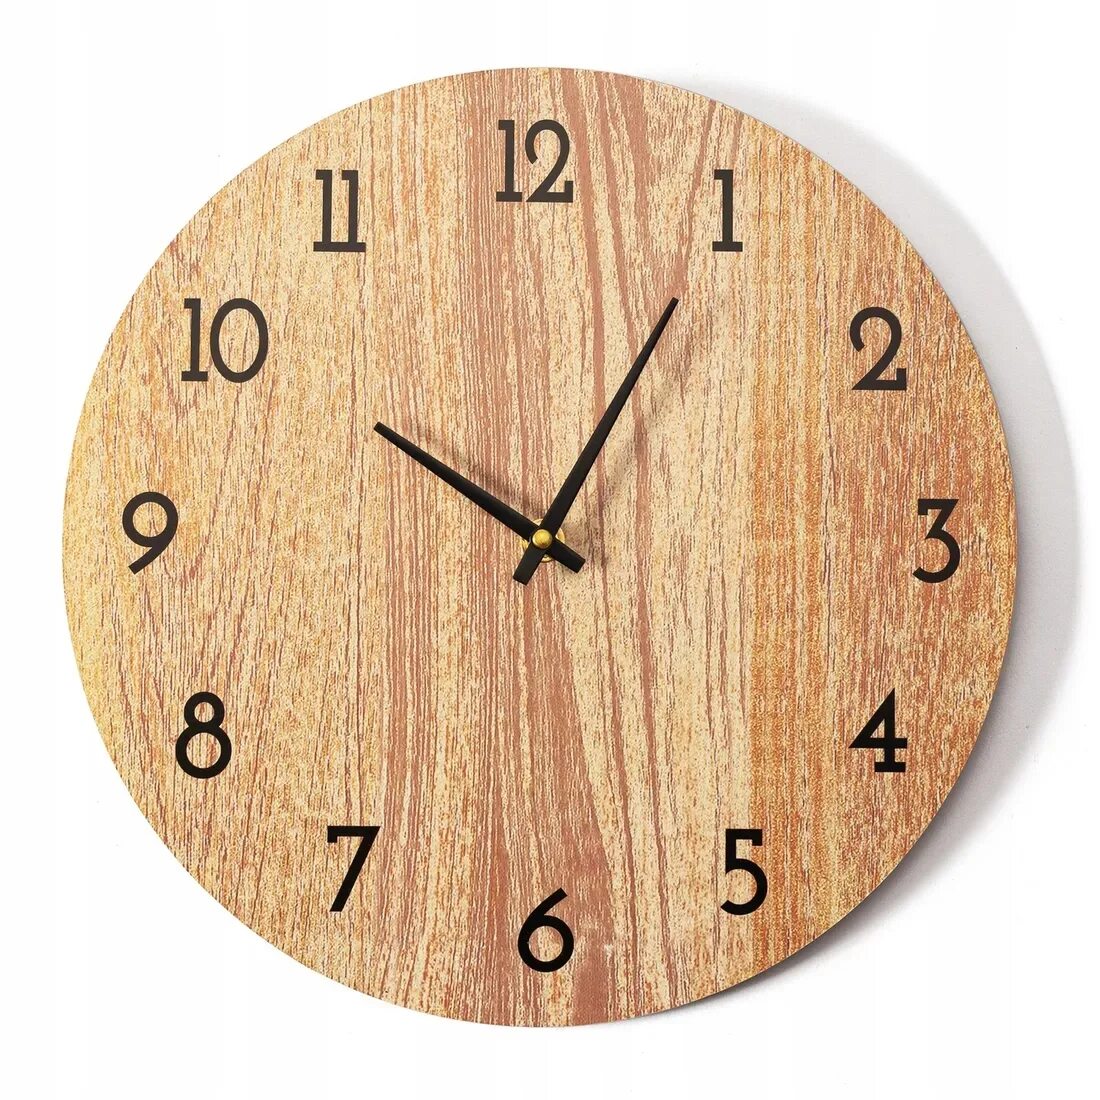 Wooden time. Часы настенные деревянные. Часы круглые деревянные. Большие деревянные часы. Циферблат часов дерево.